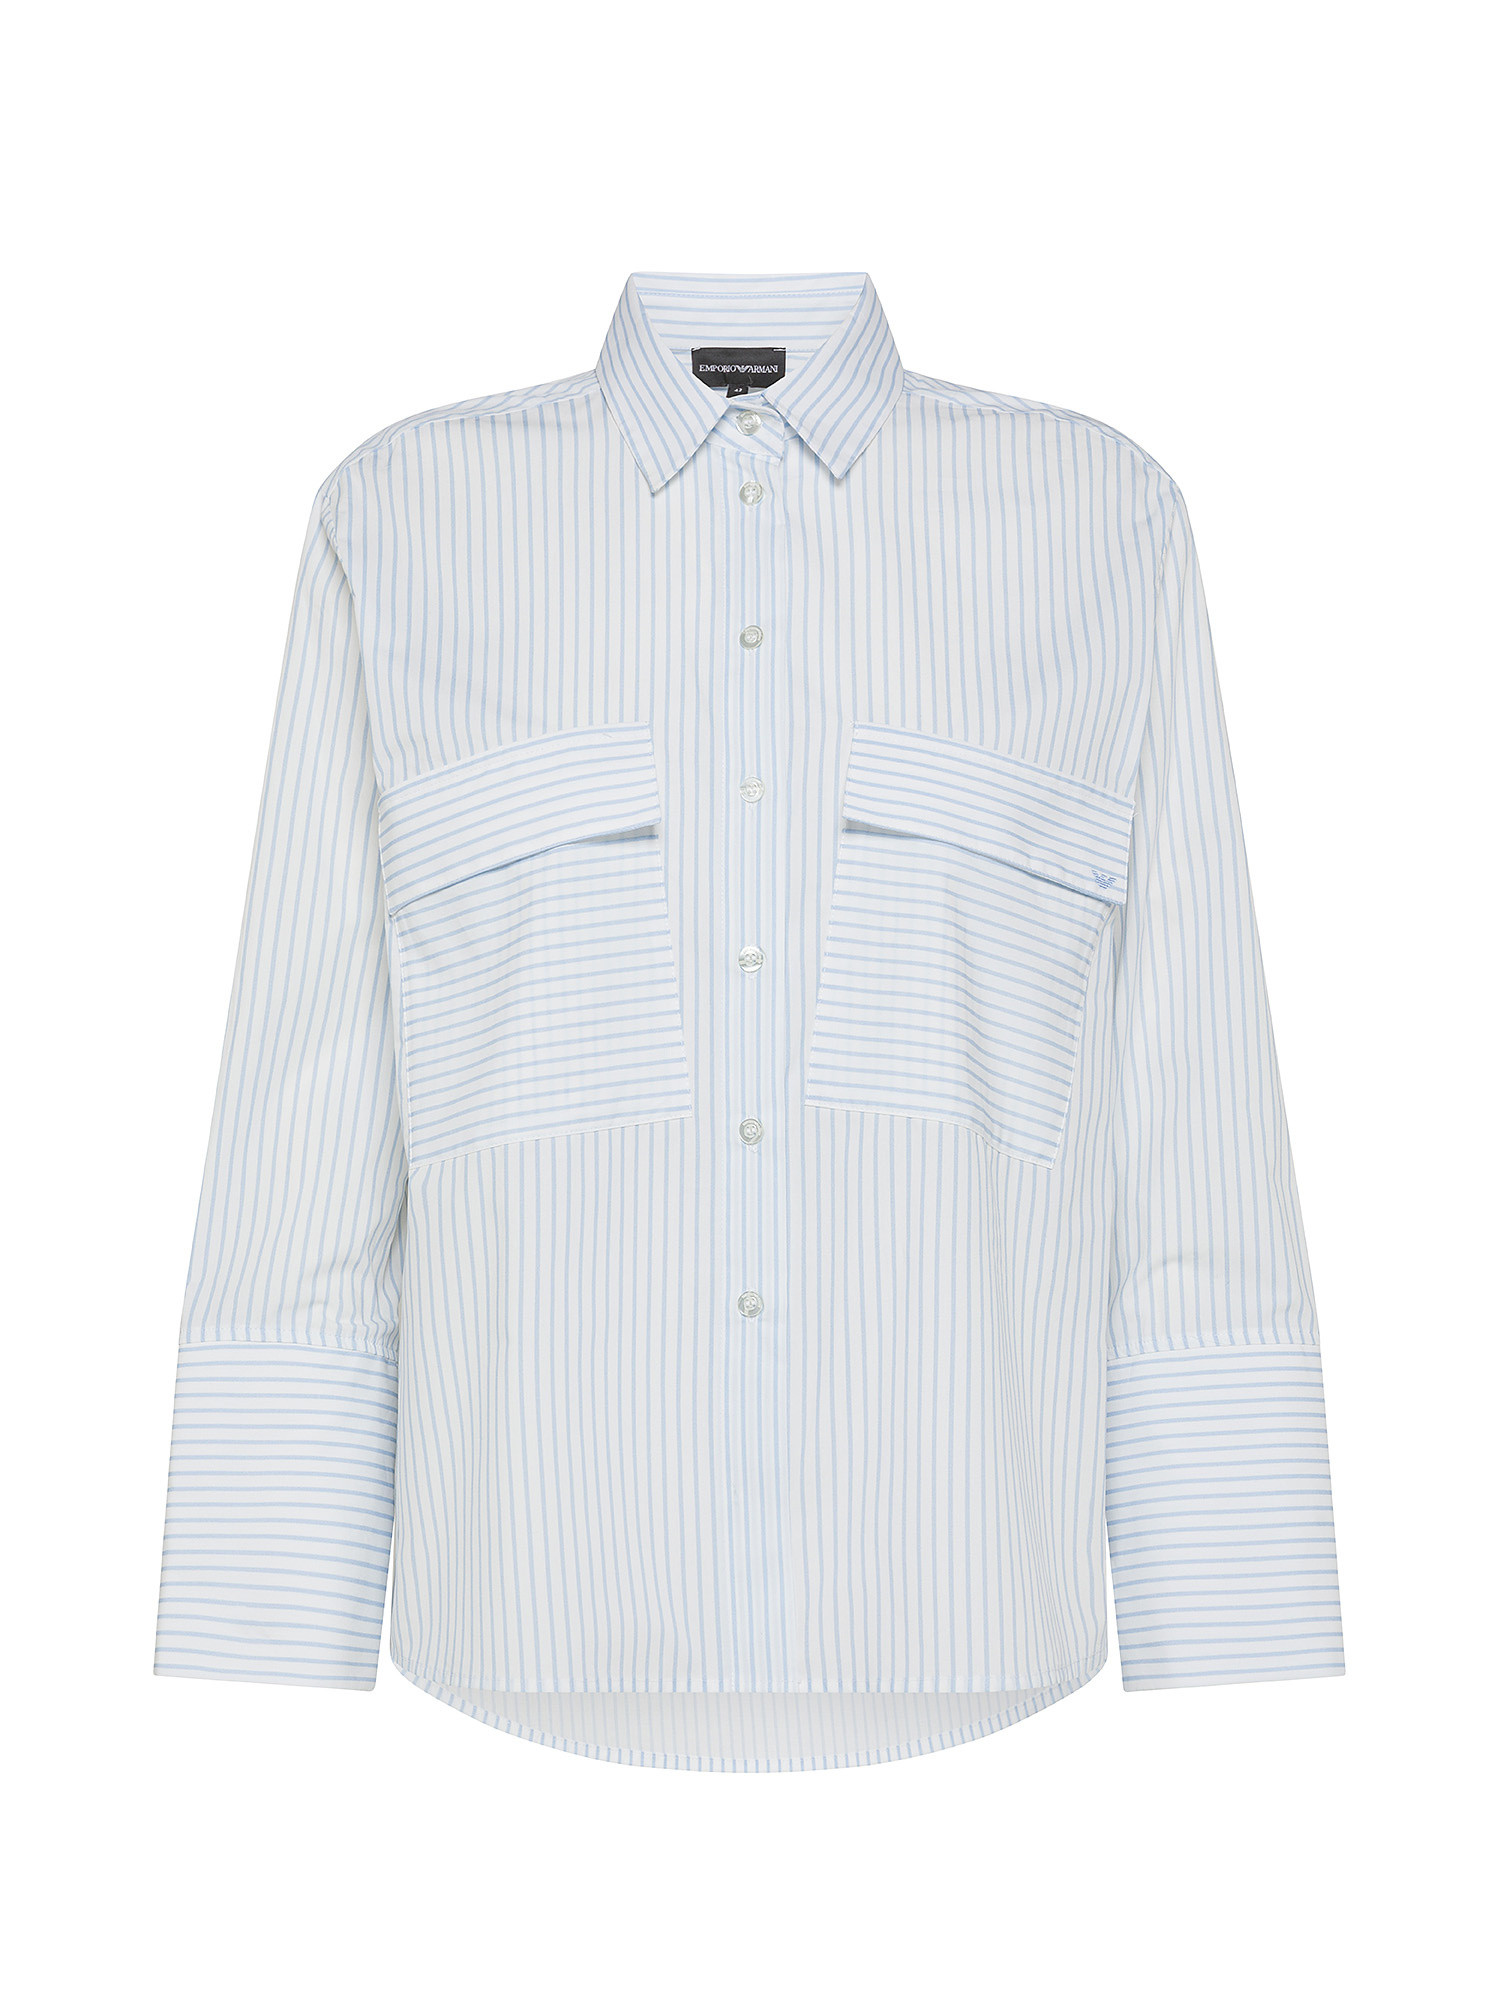 Emporio Armani - Camicia a righe in cotone, Bianco, large image number 0